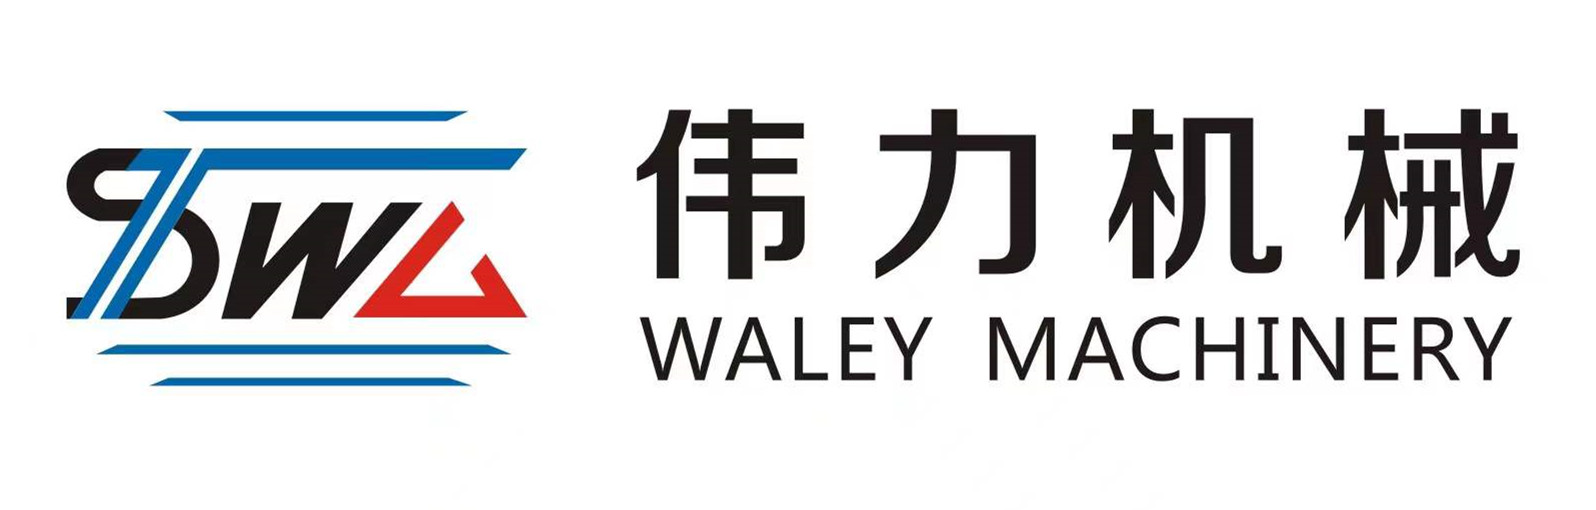 汕头市伟力塑料机械厂有限公司,waley.cn